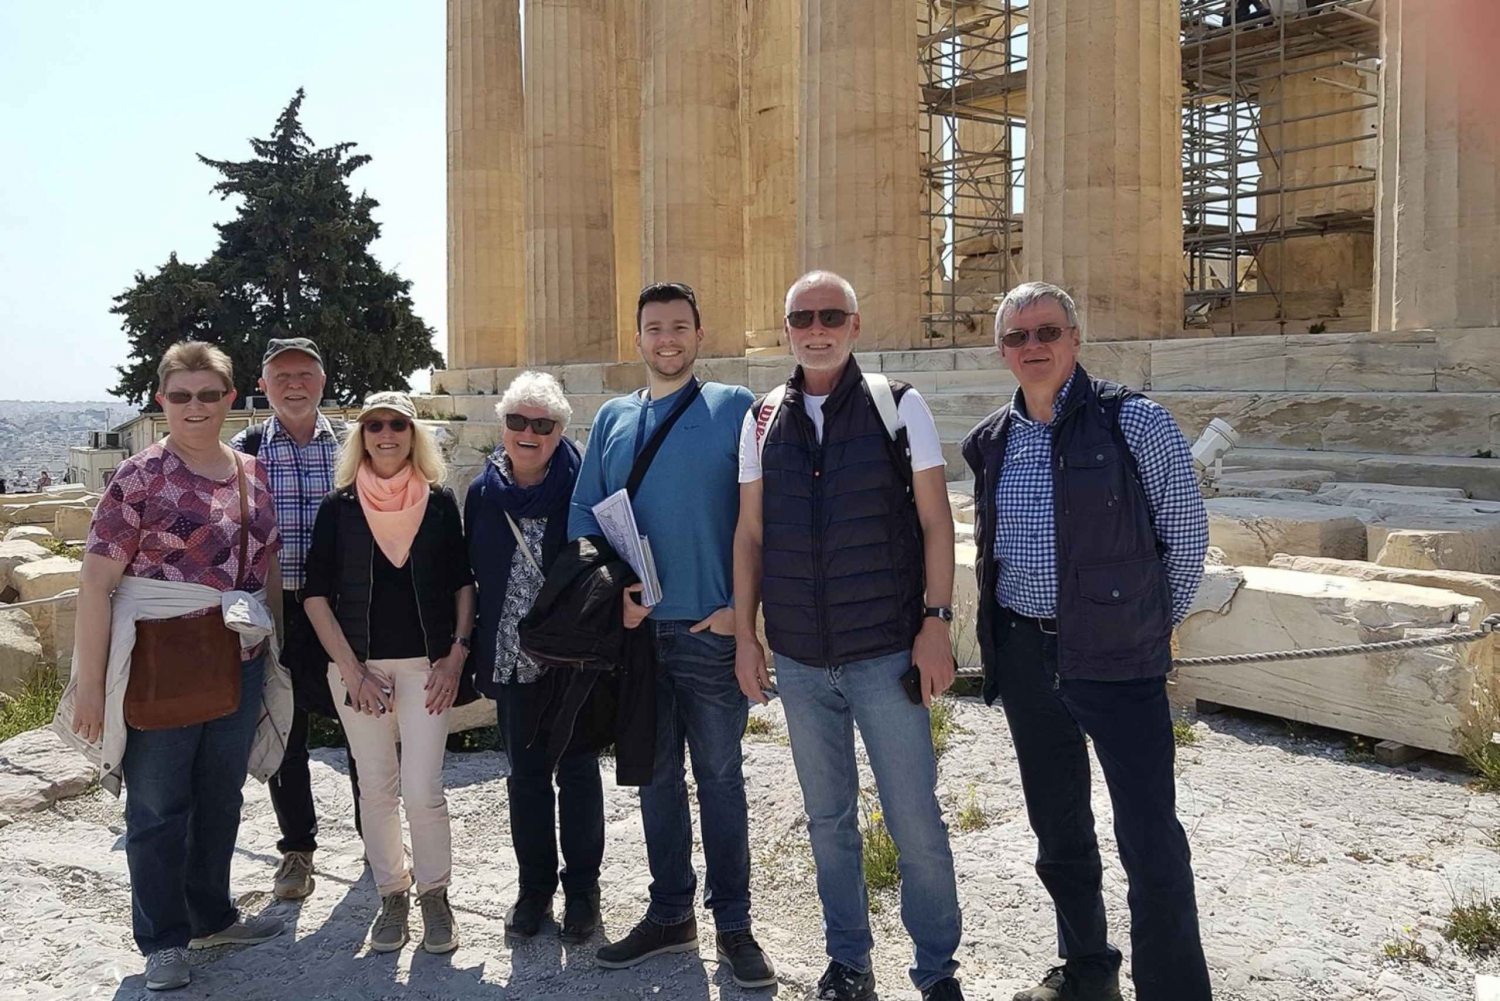 Athènes : Acropole avec musée, visite guidée et déjeuner grec